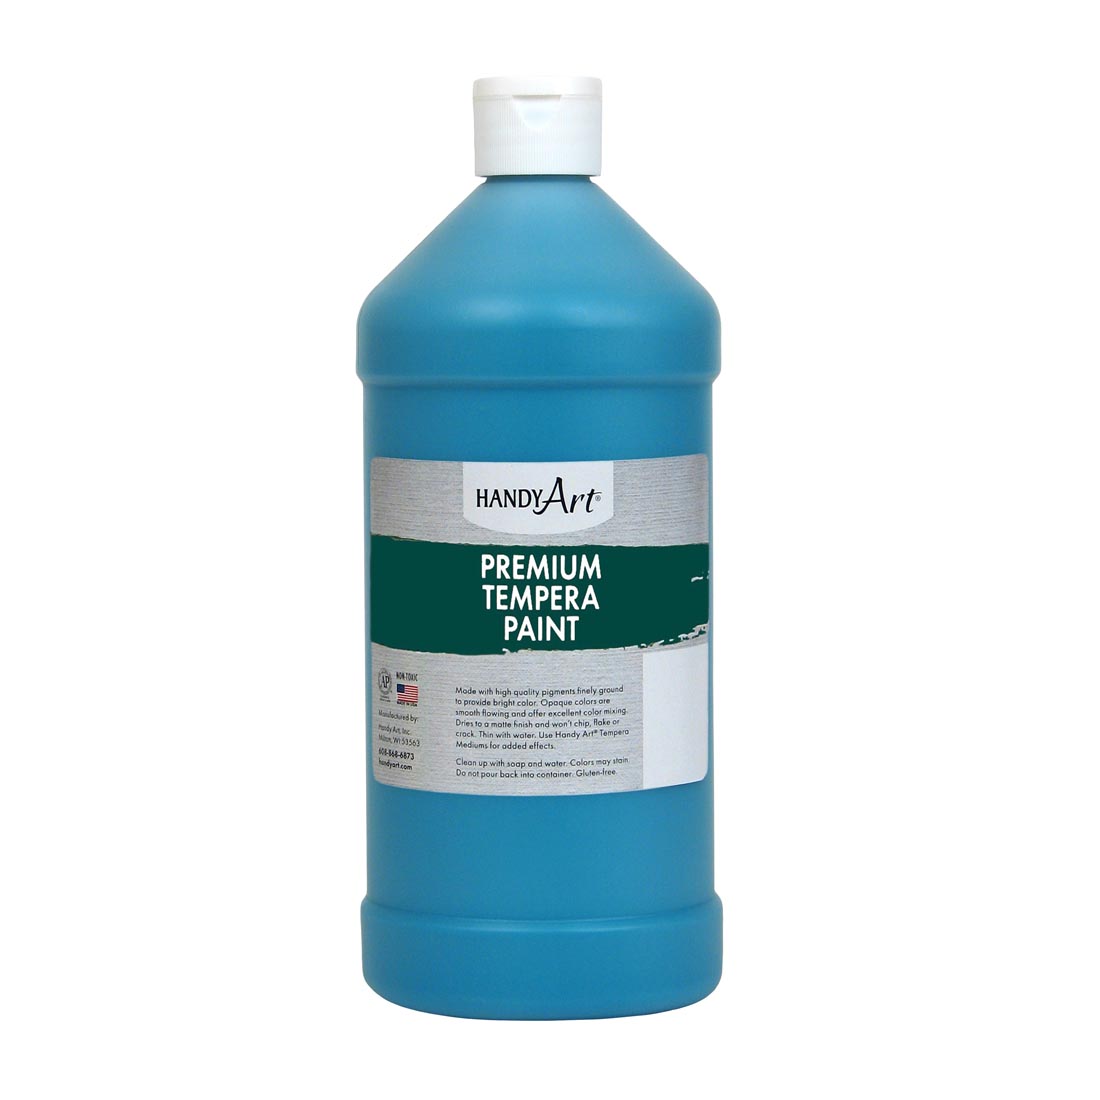 Quart bottle of Turquoise Handy Art Premium Tempera Paint